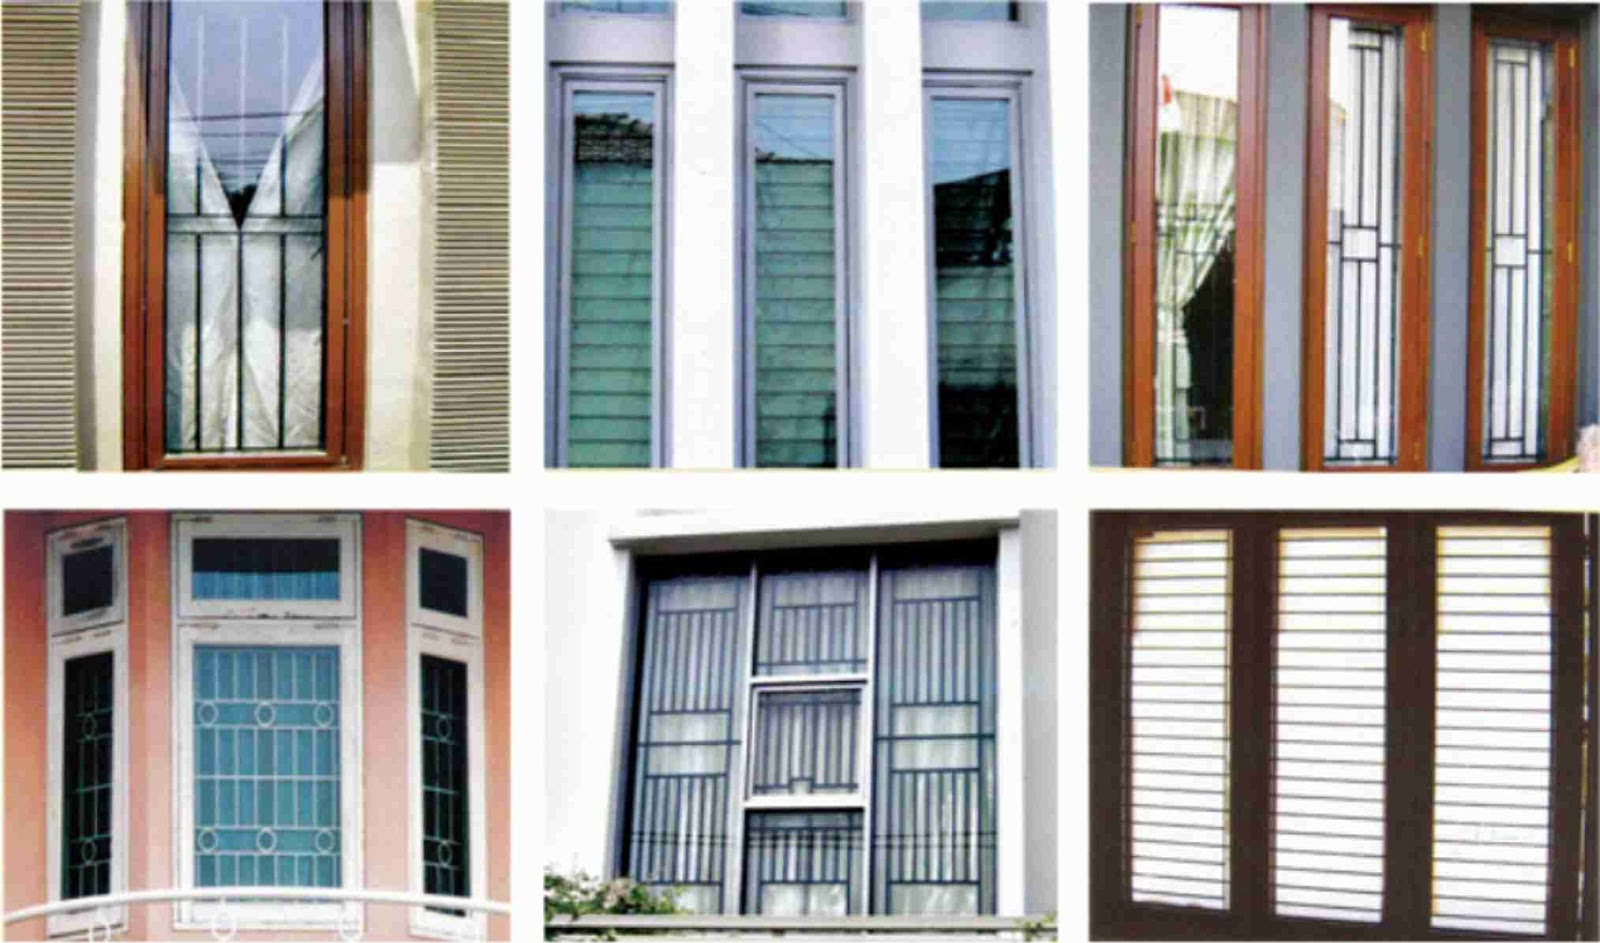 Download Kumpulan 80 Model Jendela Rumah Minimalis Sederhana